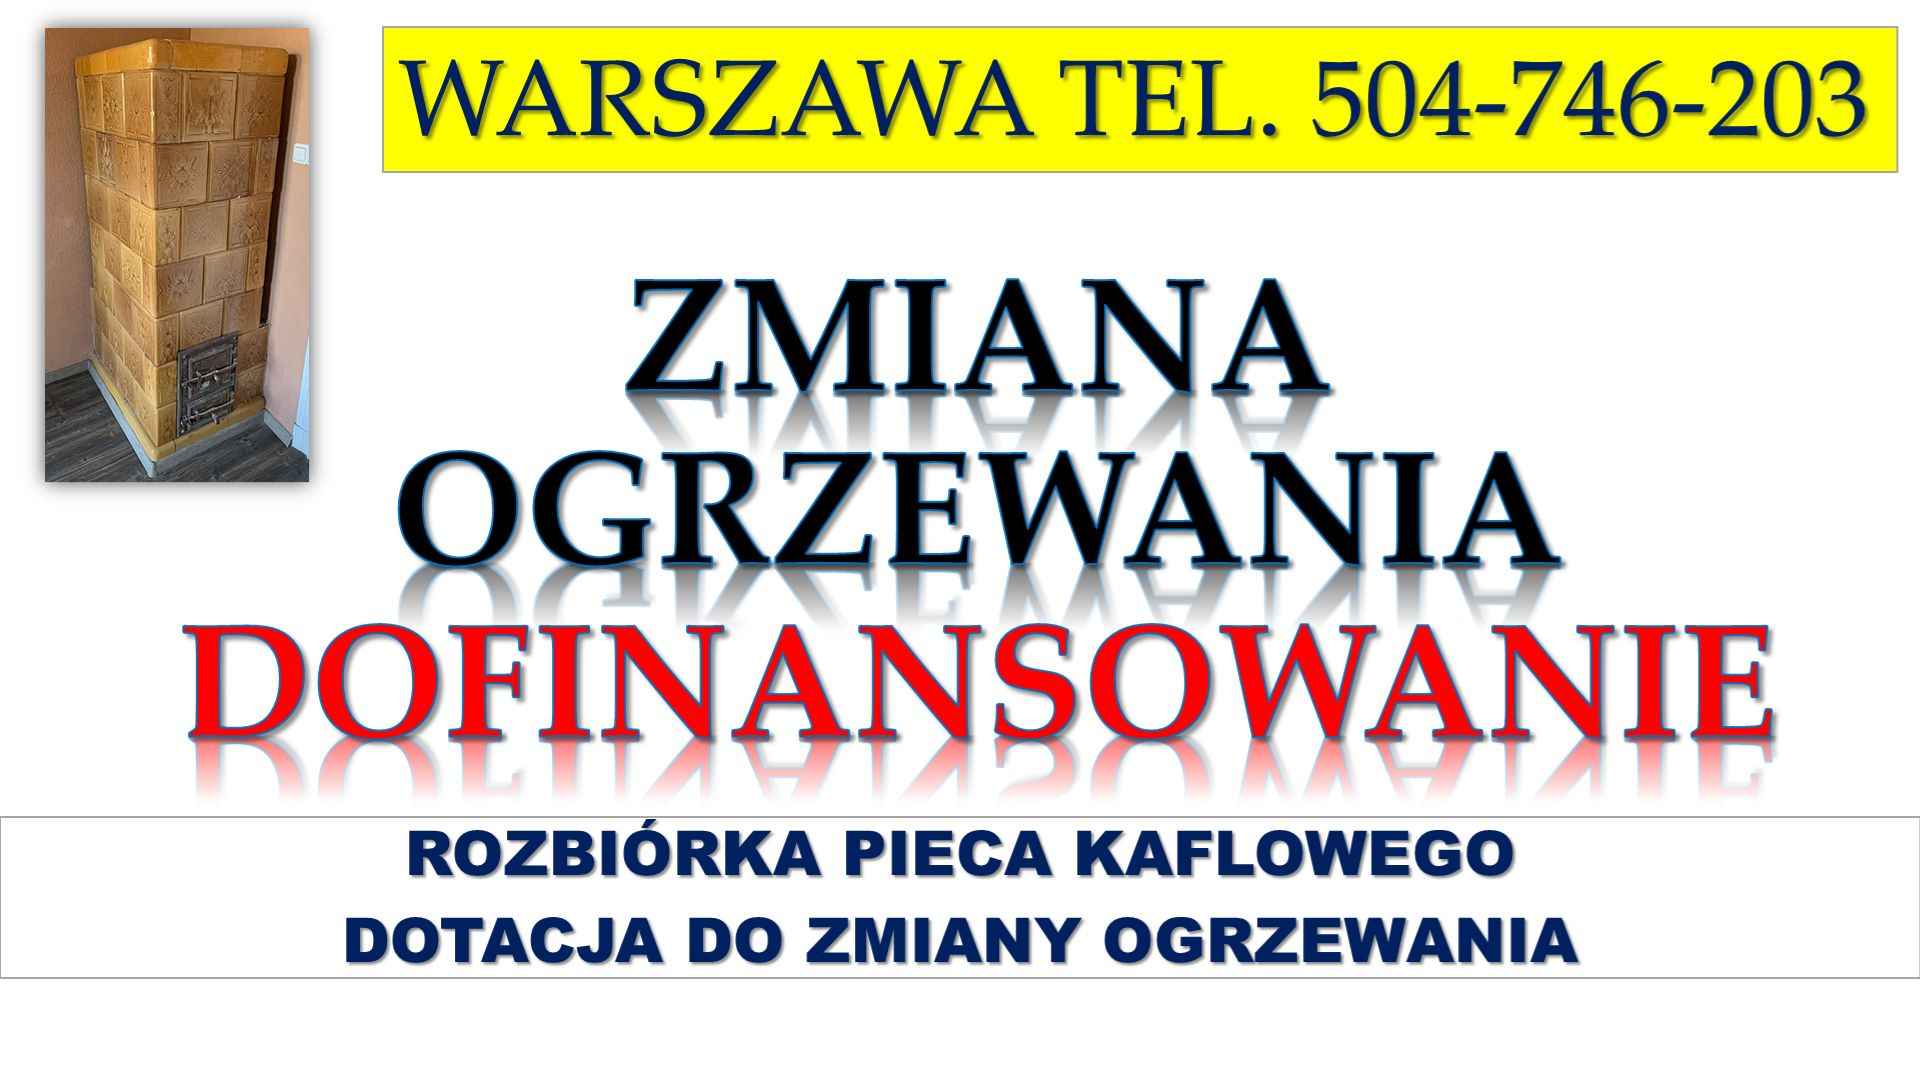 Likwidacja pieca, dotacja, Warszawa, t 504-746-203. Zmiana ogrzewania. Psie Pole - zdjęcie 3